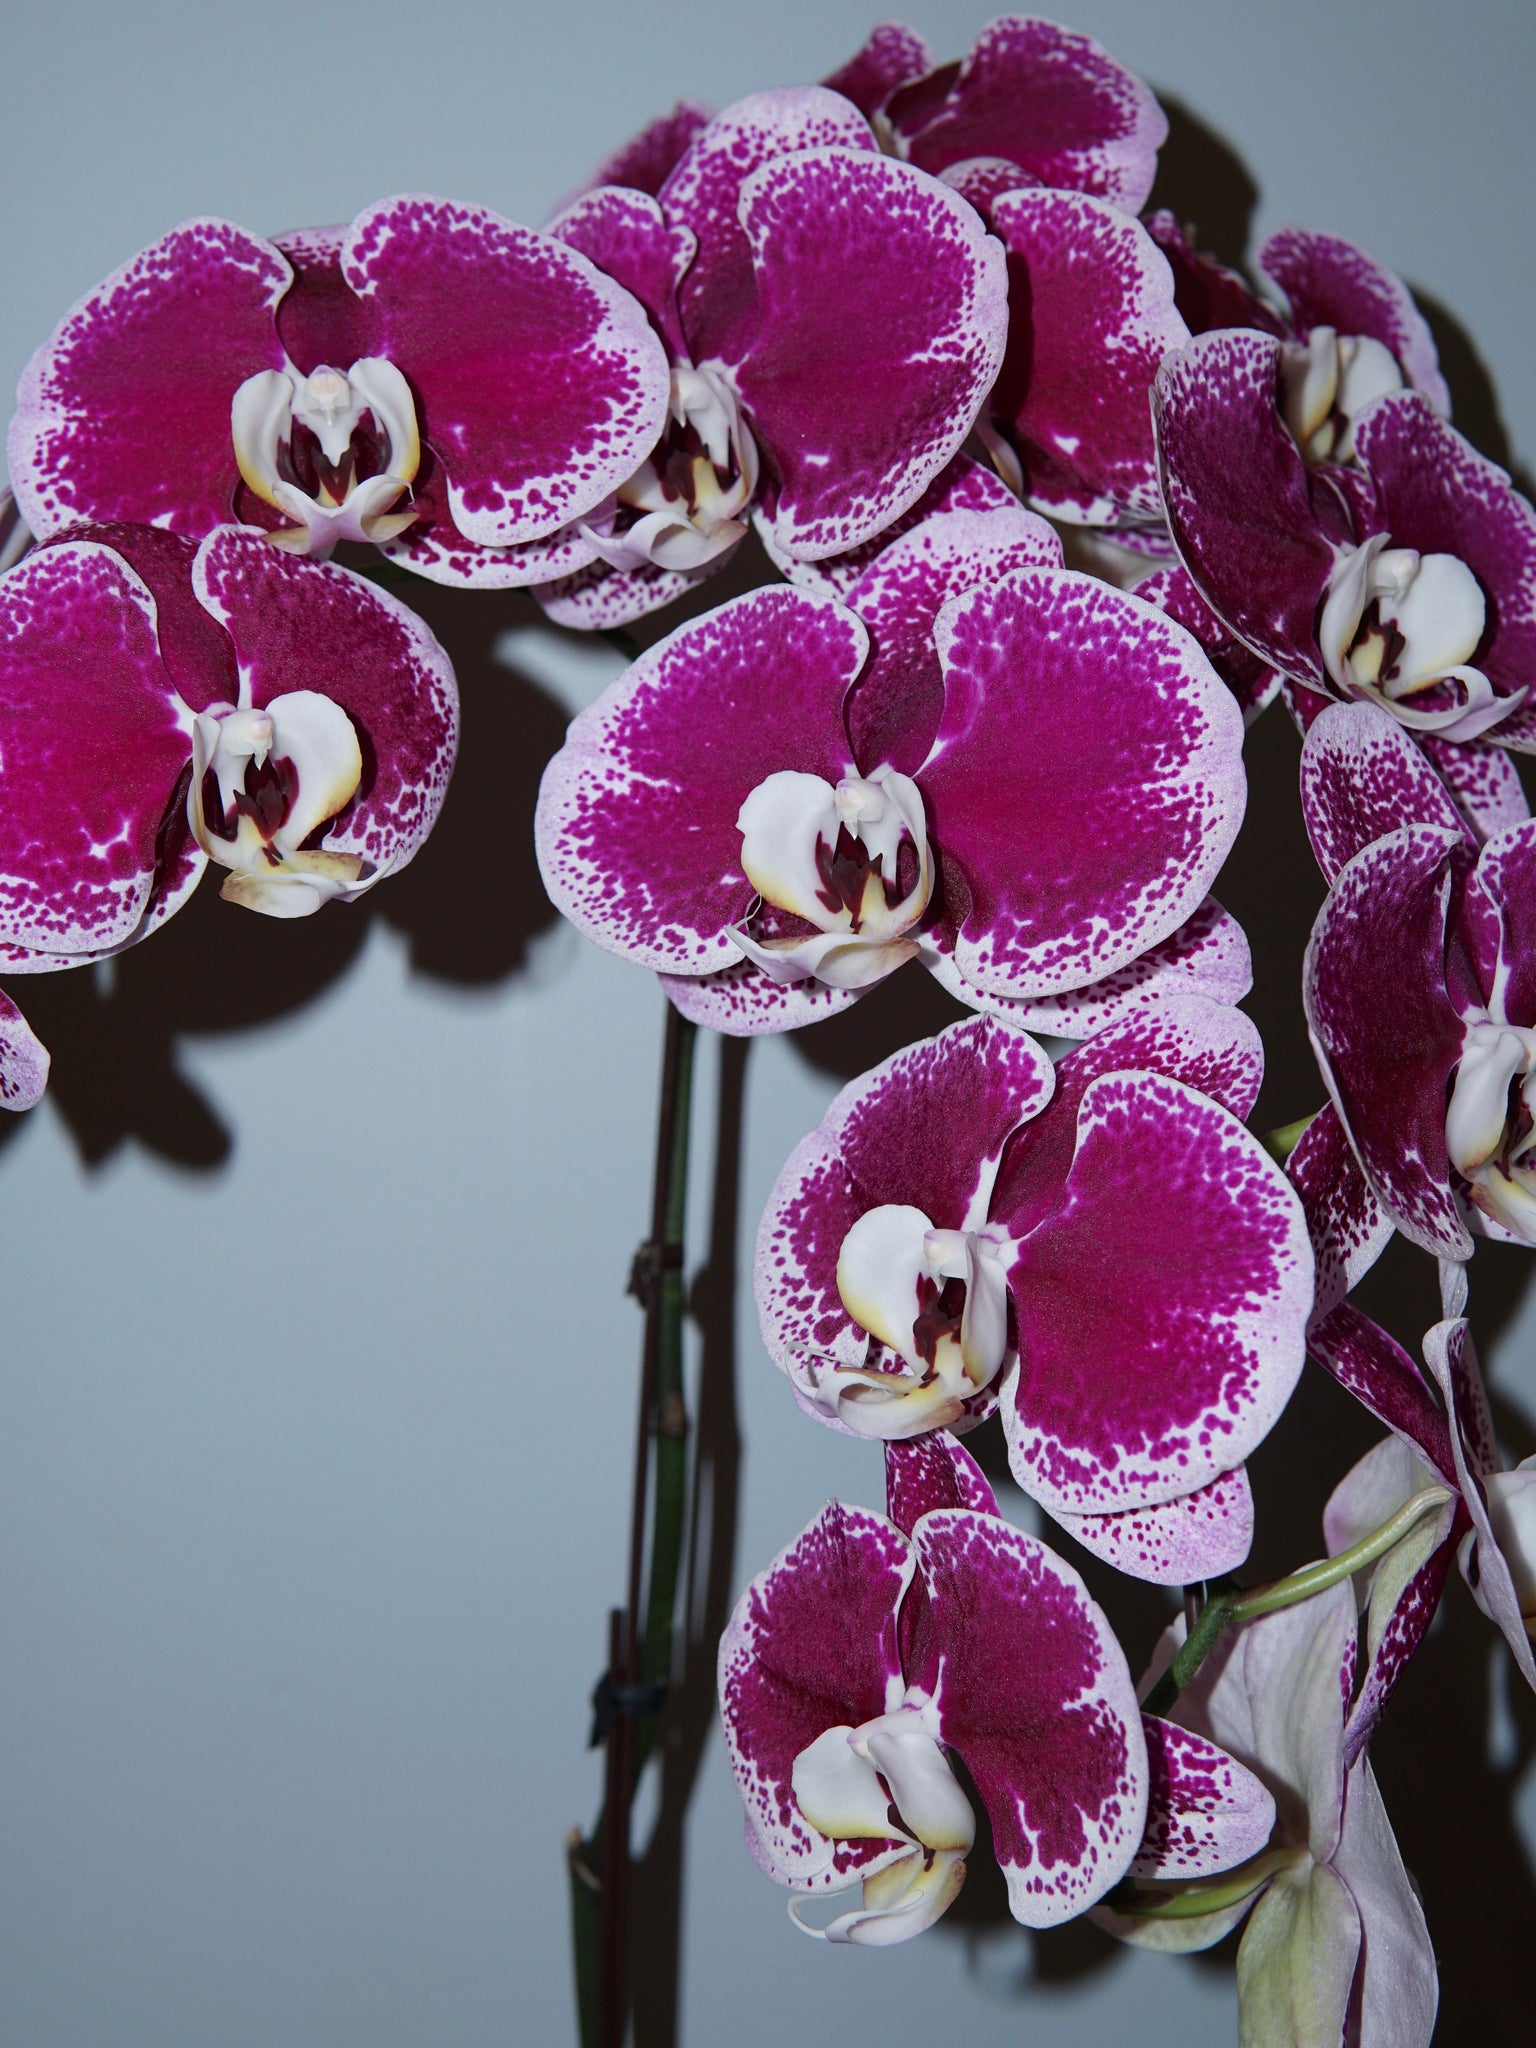 La Bomba Floristry Spotted Pink Phaleonopsis Orchid - Potted La Bomba Floristry Vancouver Canada